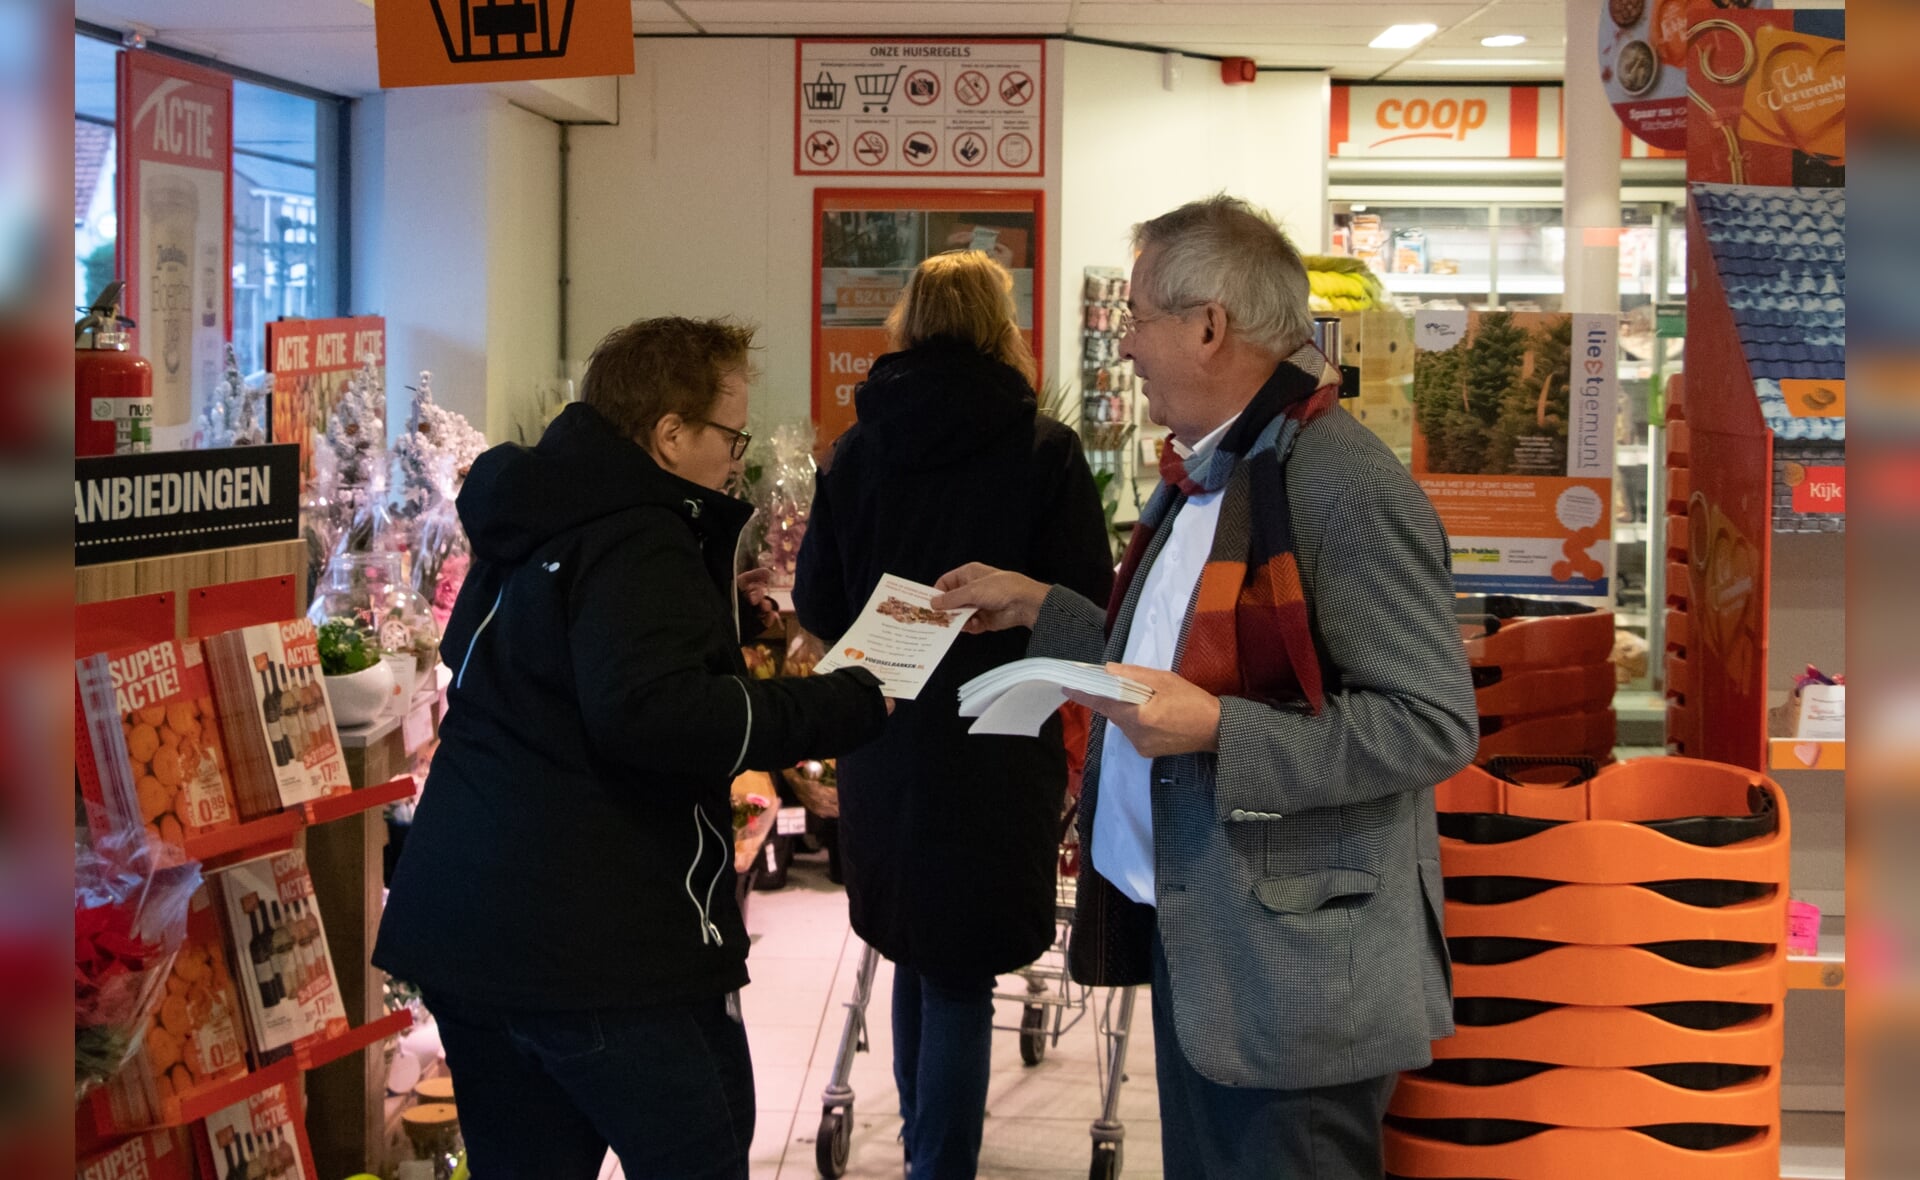 Voorzitter Arjen Witteveen van de Voedselbank Boxtel e.o. flyerde vorig jaar actief bij de Coop in Liempde. Ook dit jaar draagt hij weer zijn steentje bij, samen met nog veel meer vrijwilligers. (Foto: Lars van den Akker, 2018).